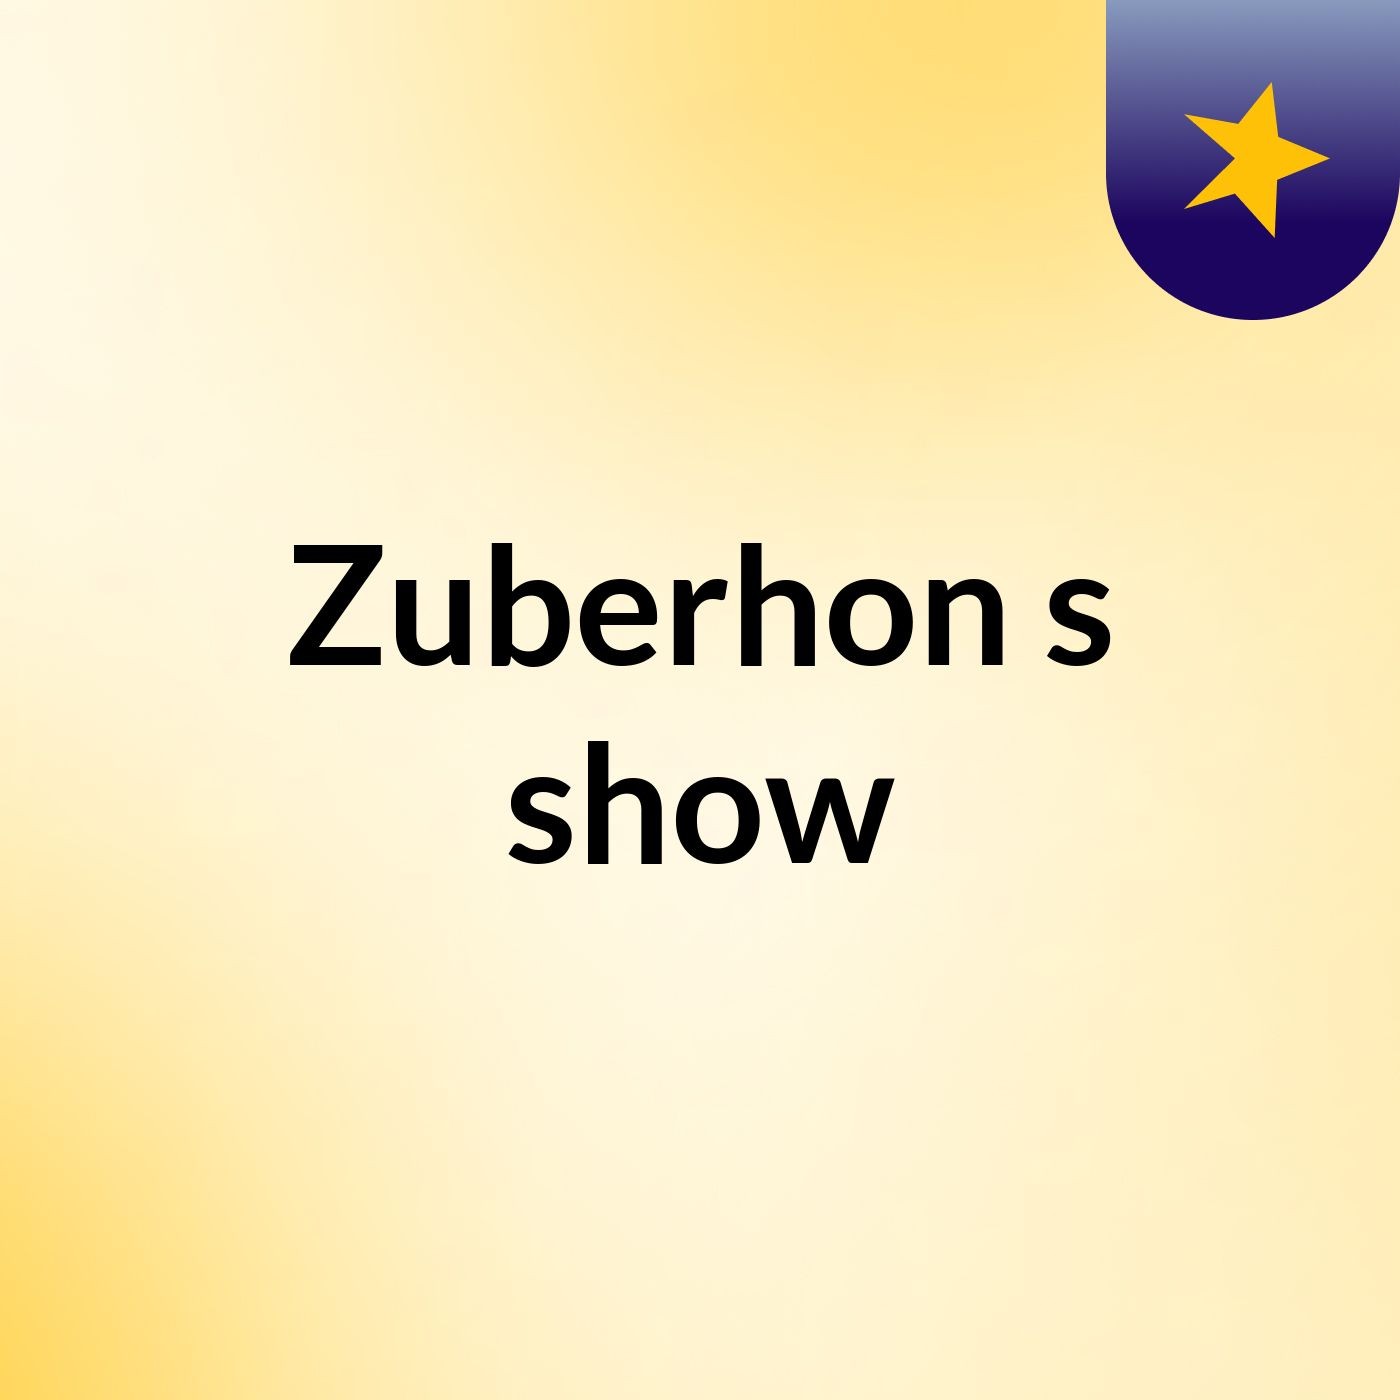 Zuberhon's show